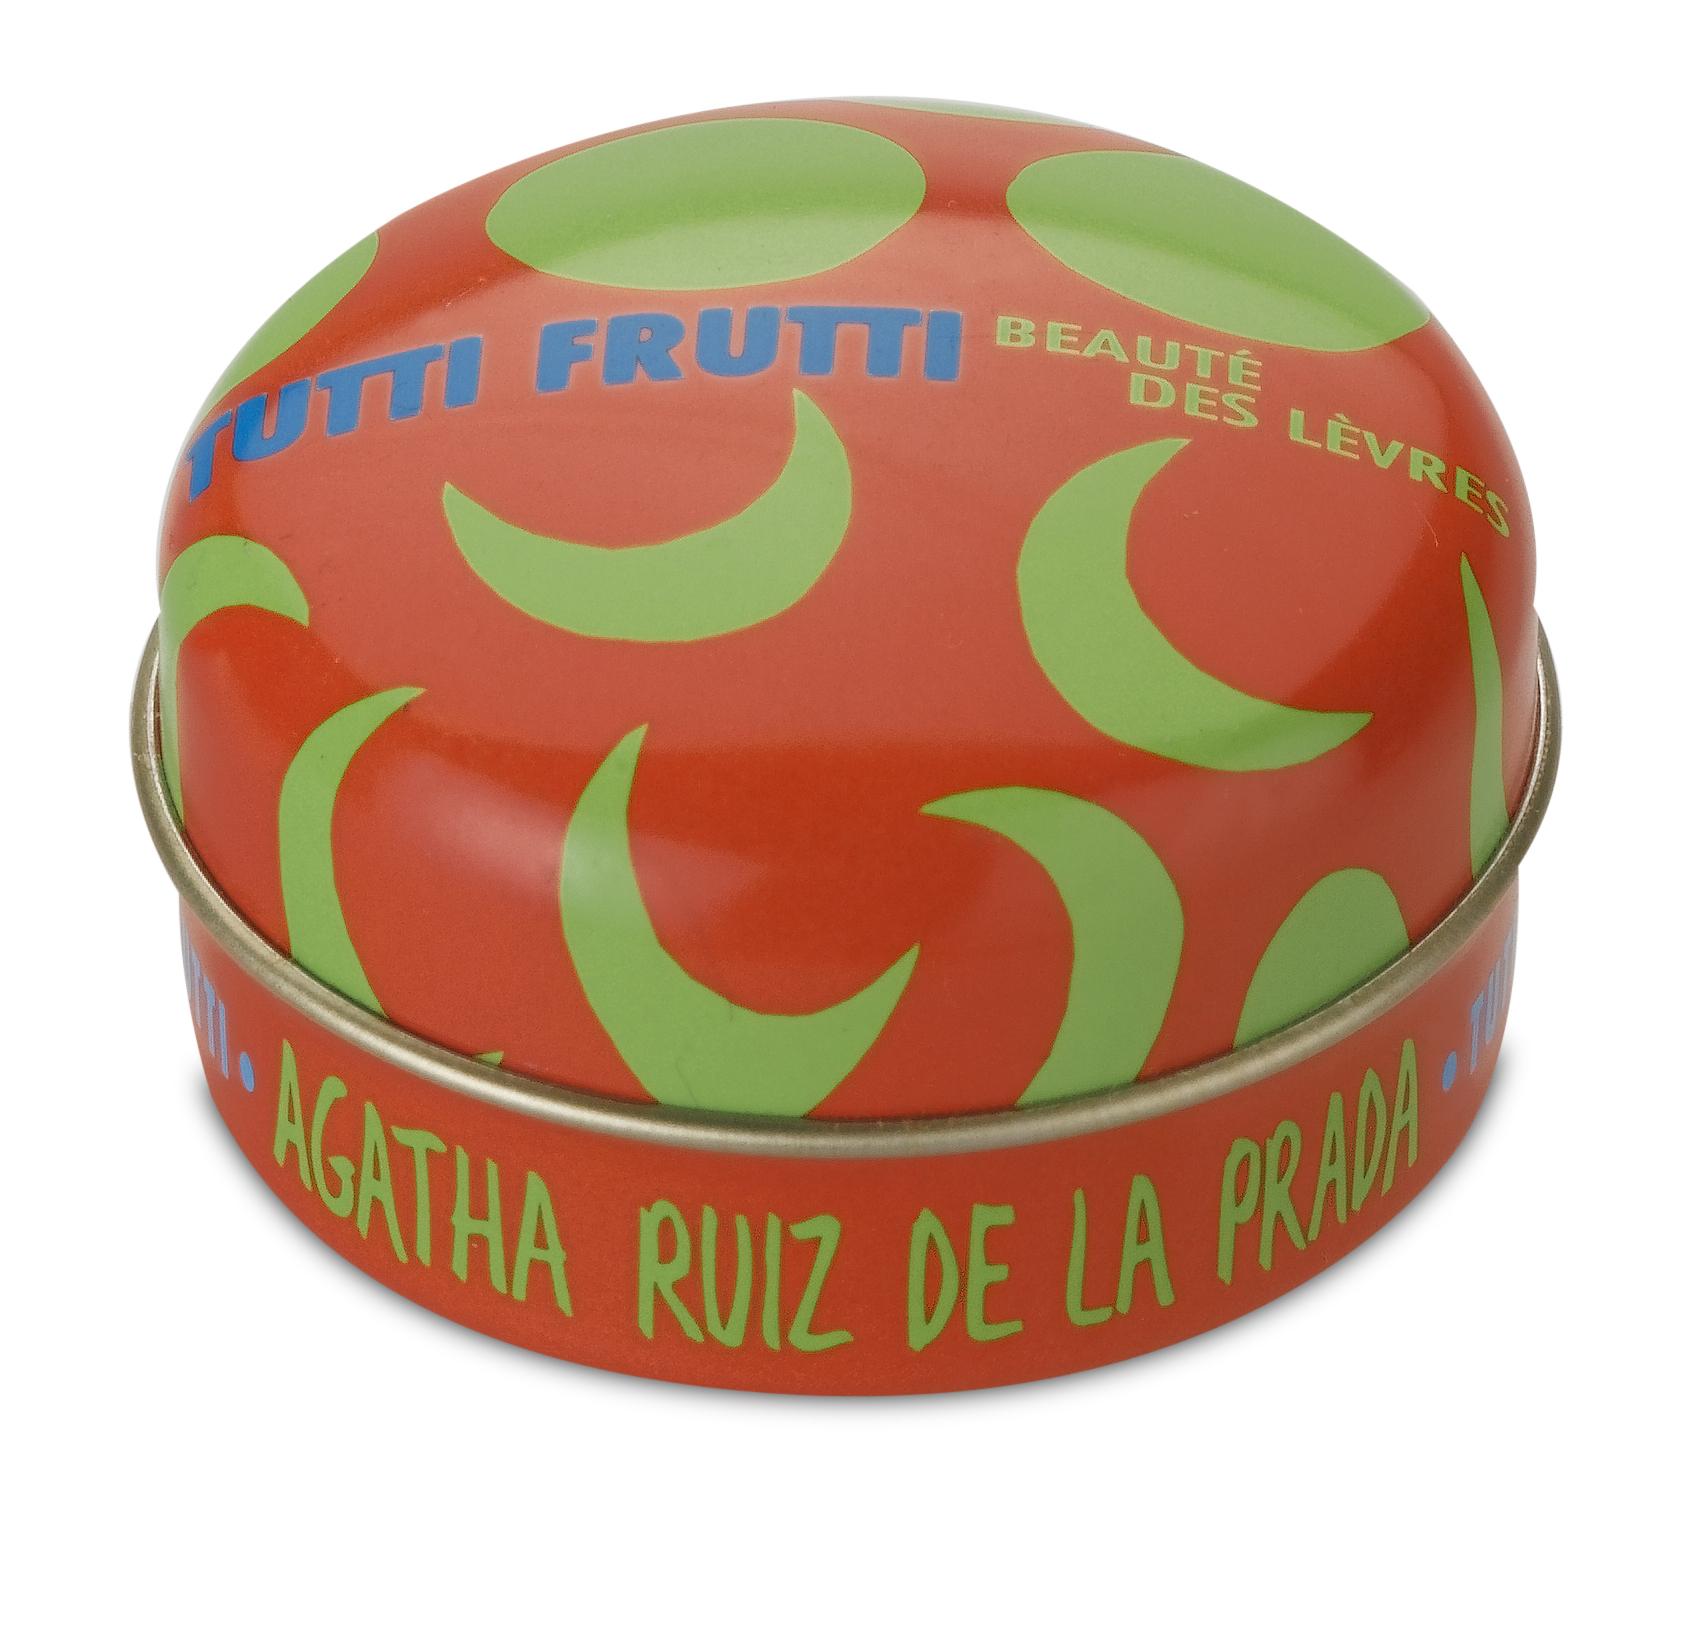 Foto Vaselina Beaute de Levres De Agatha Ruiz Tutti Fruti